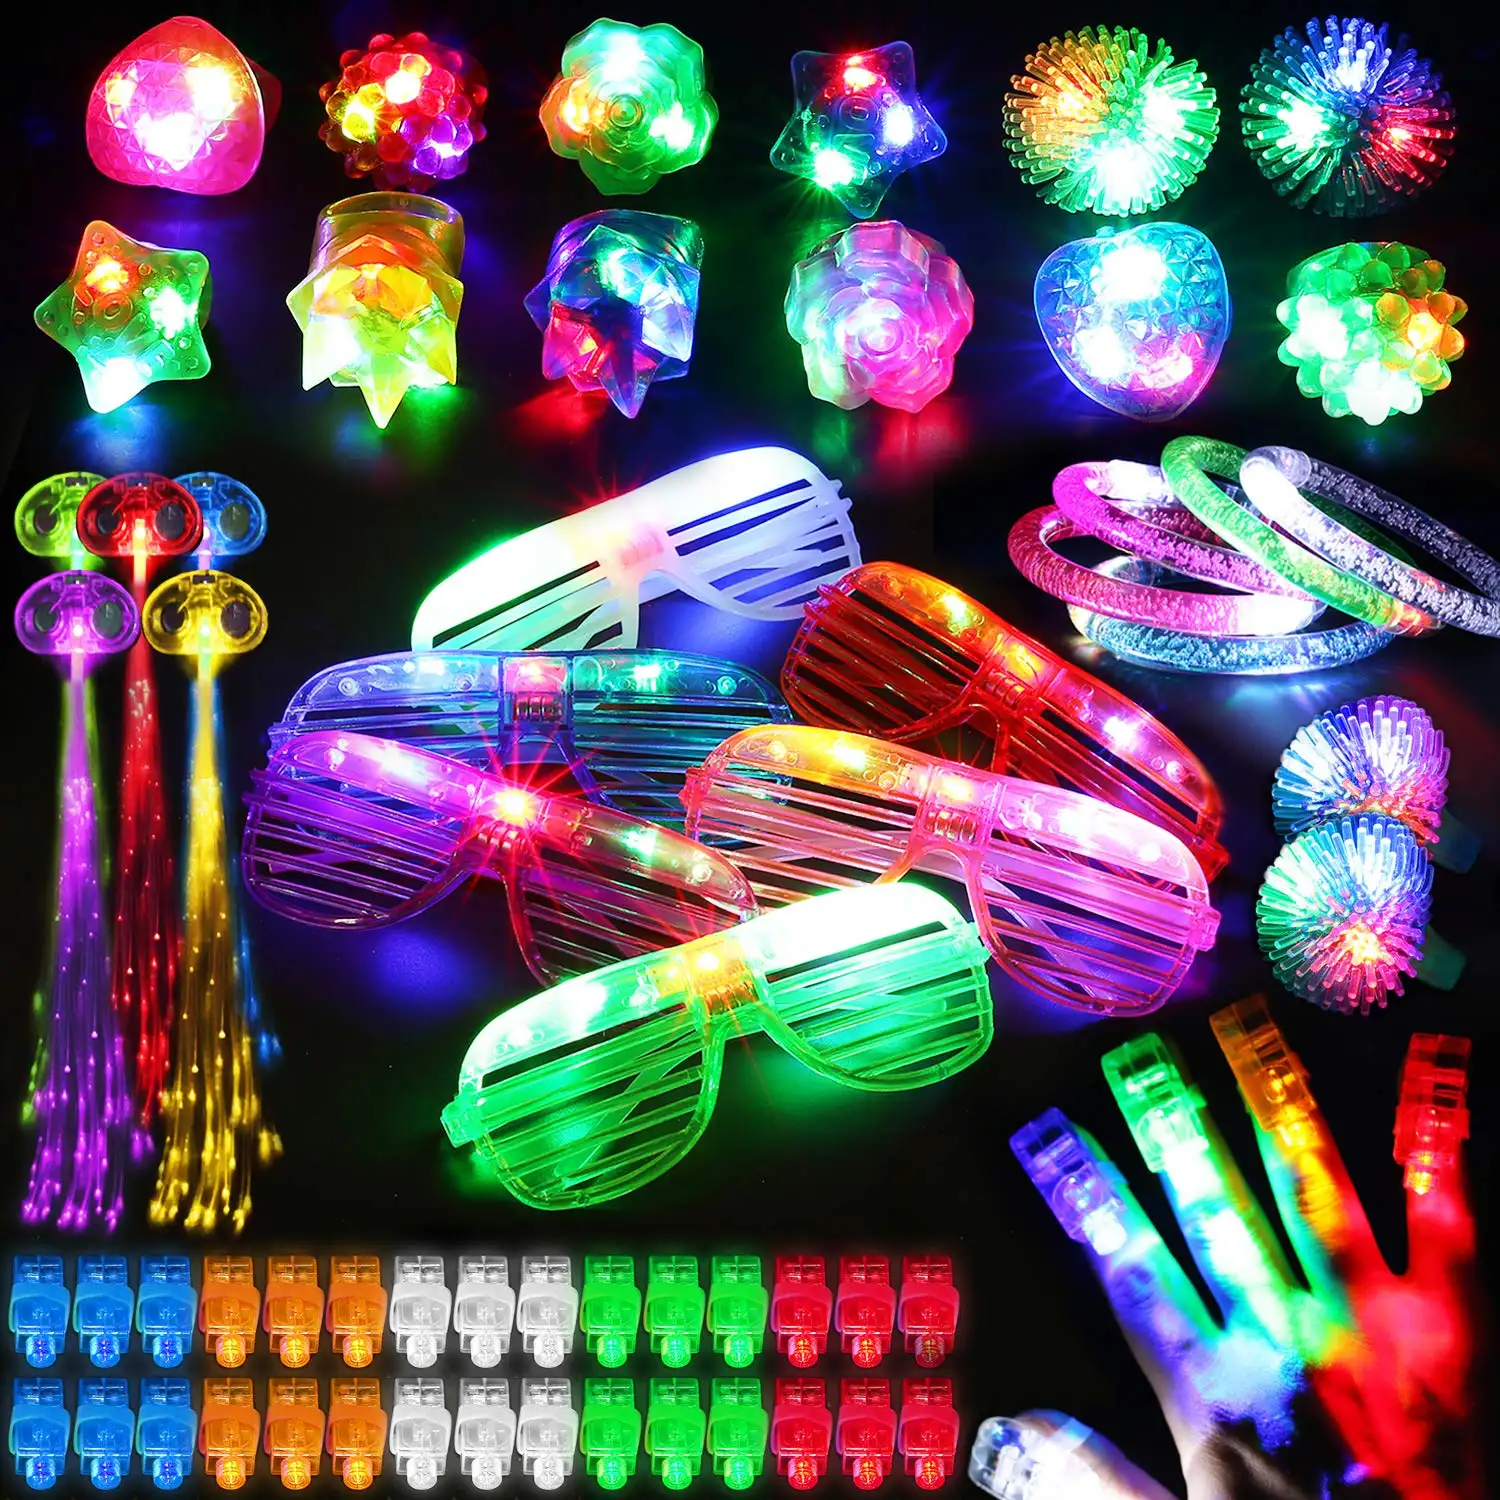 78 adet LED ışık Up parti oyuncak setleri iyilik Glow karanlık parti malzemeleri toplu ışık oyuncaklar yetişkin çocuklar için